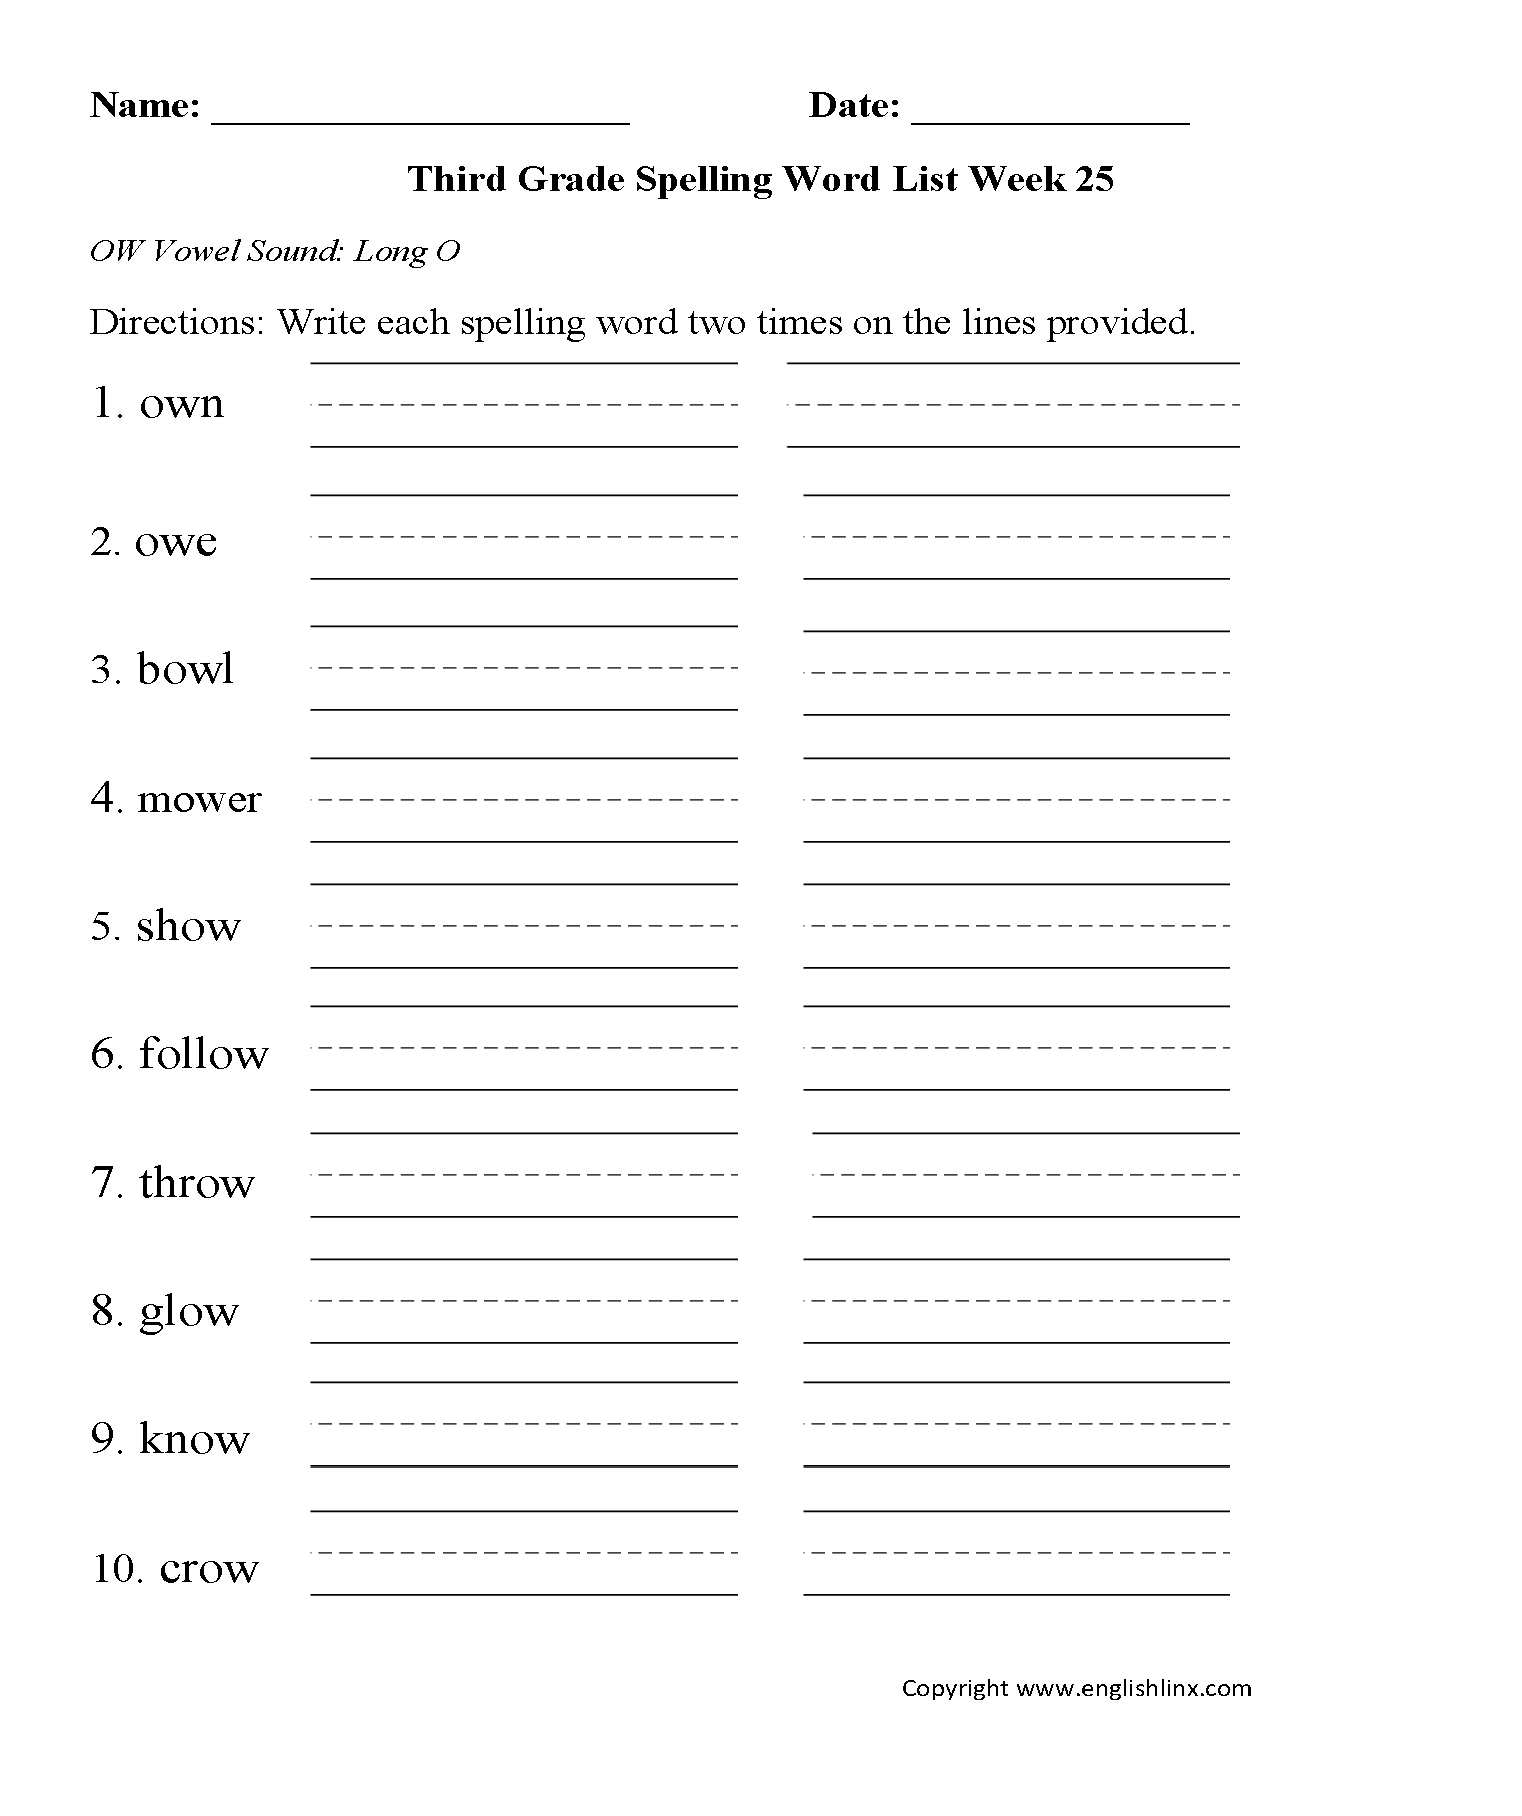 Week 25 OW Vowel Third Grade Spelling Words Worksheets